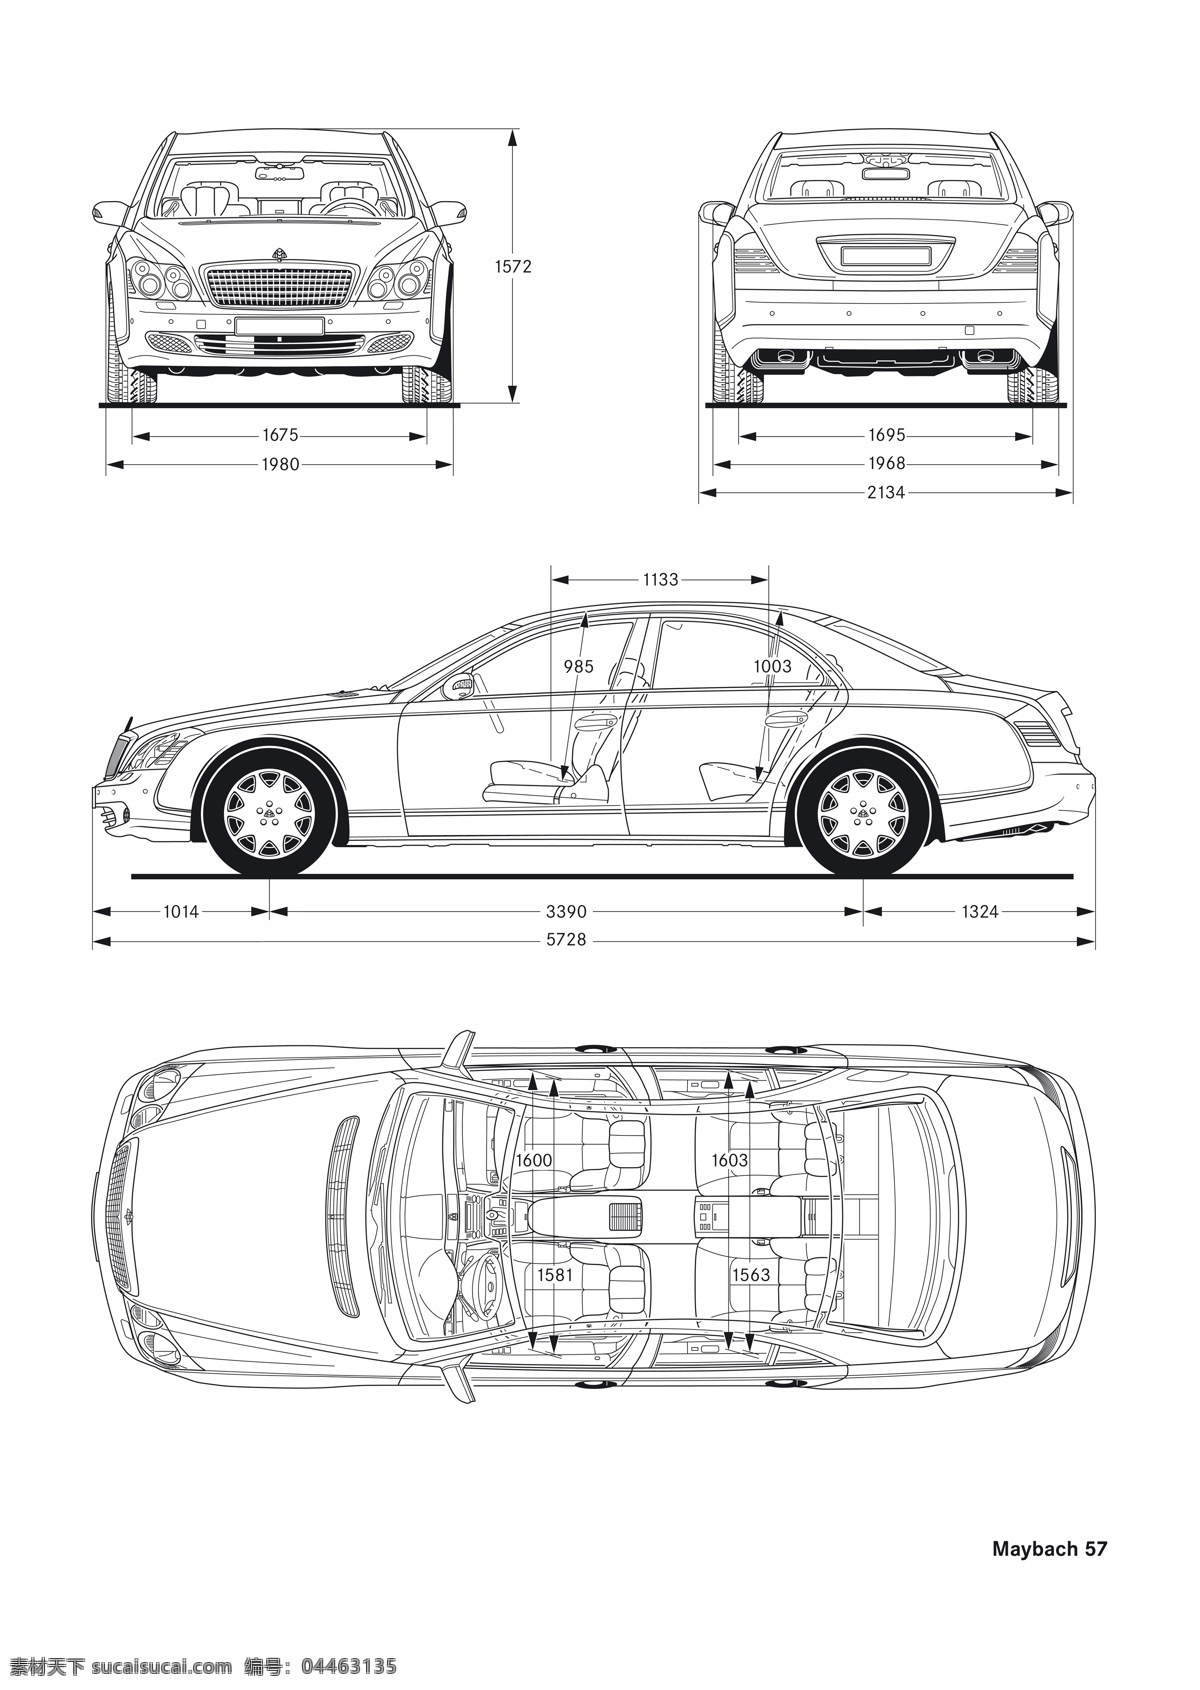 迈 巴赫 汽车 结构图 maybach 迈巴赫 交通工具 名车 豪车 豪华 奢侈 昂贵 黛米勒 梅赛德斯 结构 图纸 草案 现代科技